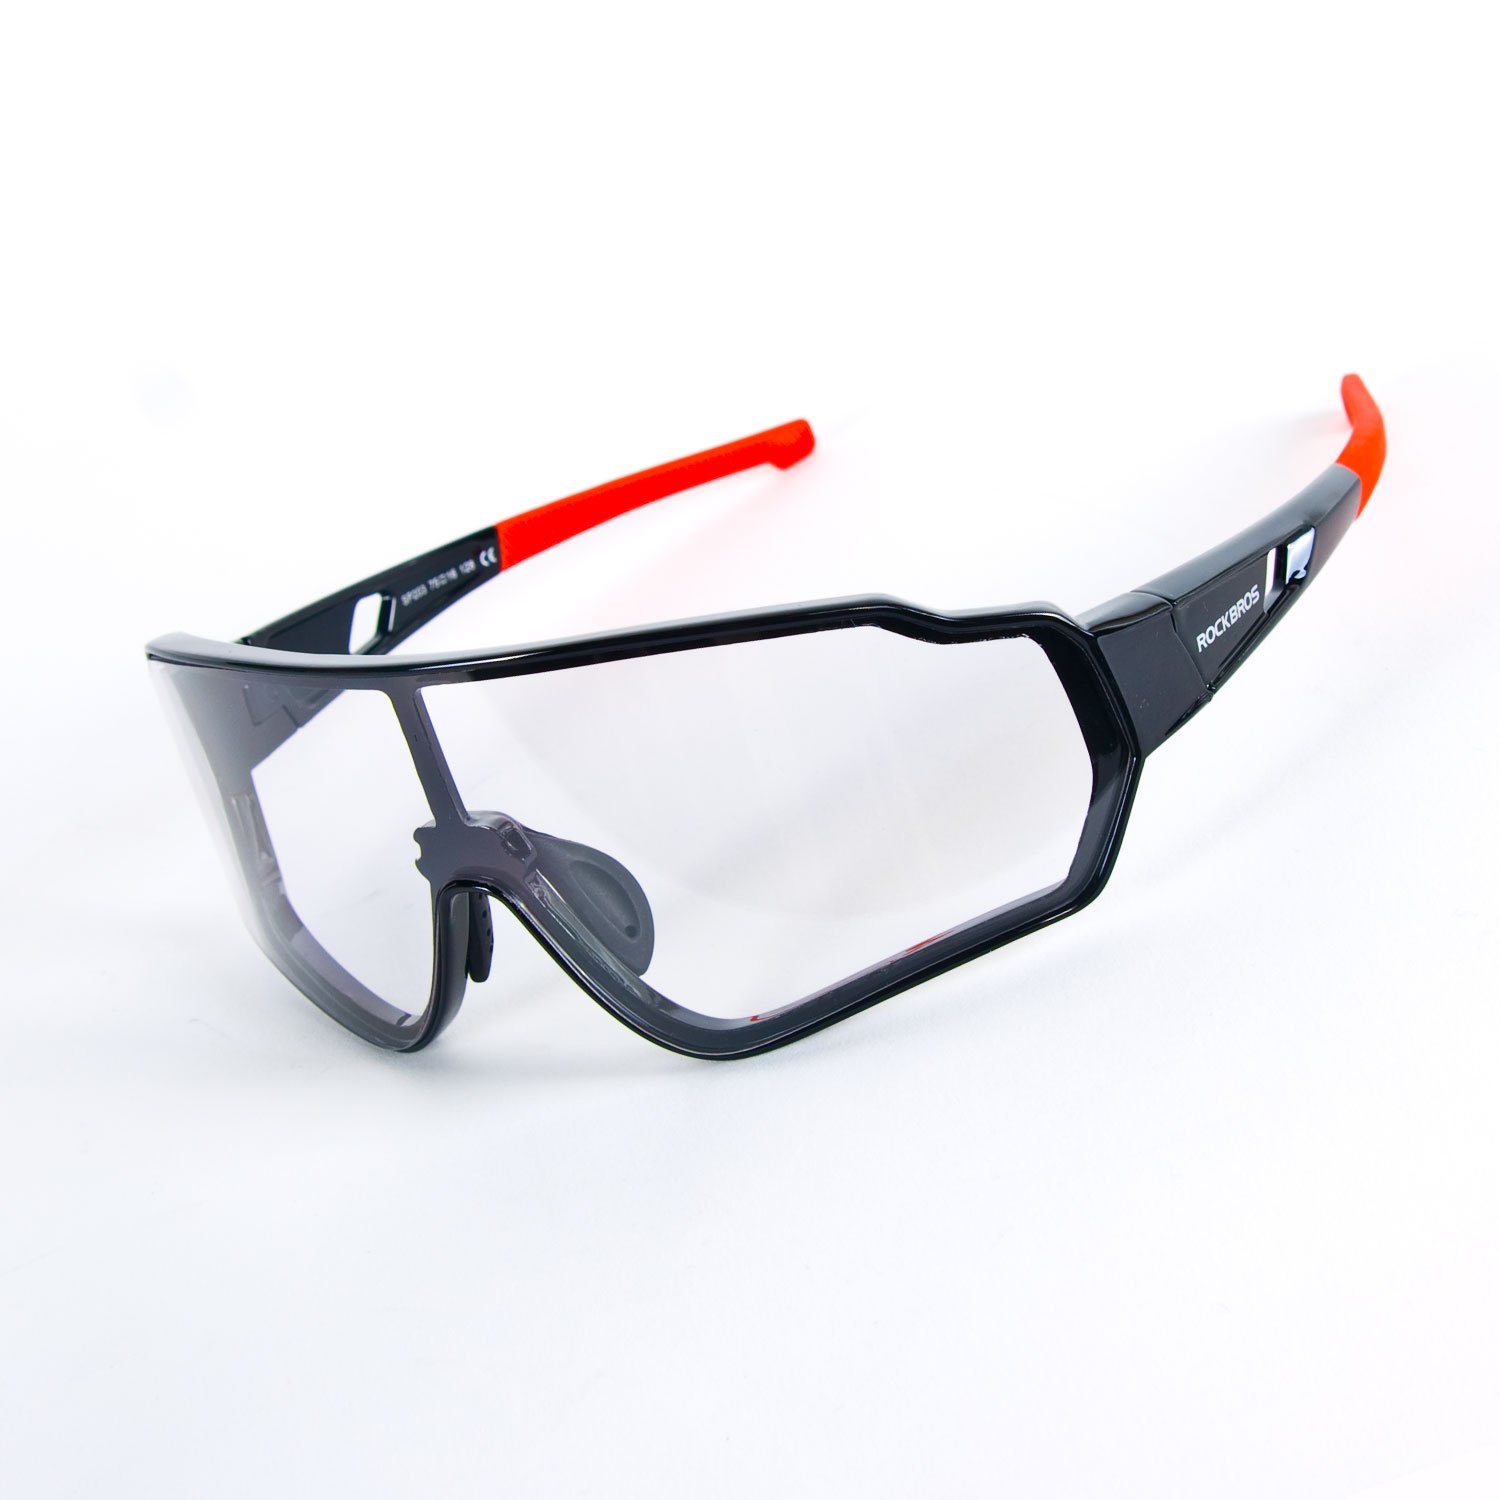 Очки велосипедные Rockbros, поляризационные, оправа черно-красная, 10161 очки велосипедные rockbros 10175 rb 10175